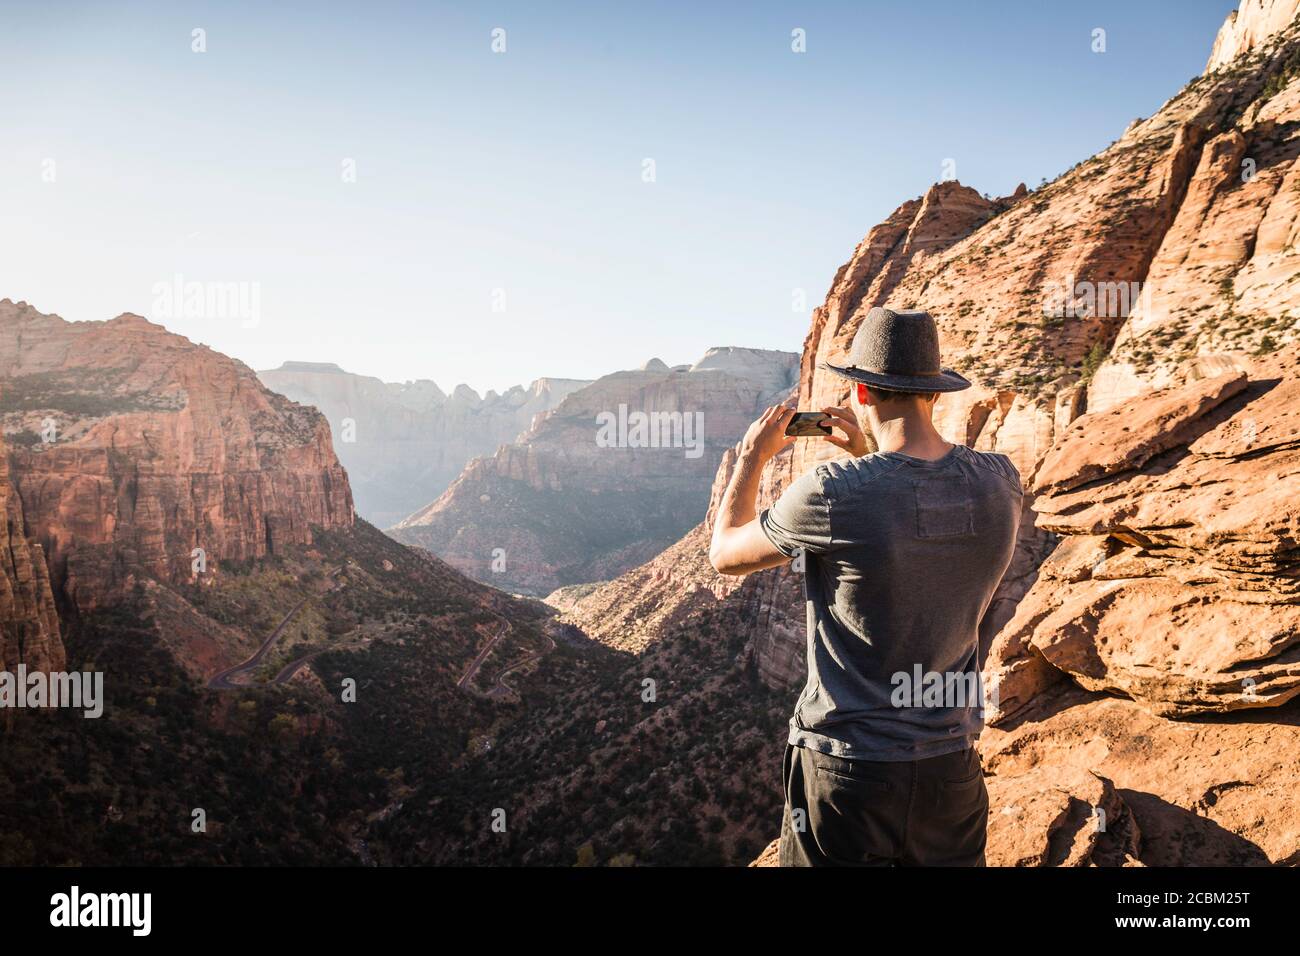 Mann, der auf dem Berg steht, fotografiert, Blick auf den Zion National Park, Utah, USA Stockfoto